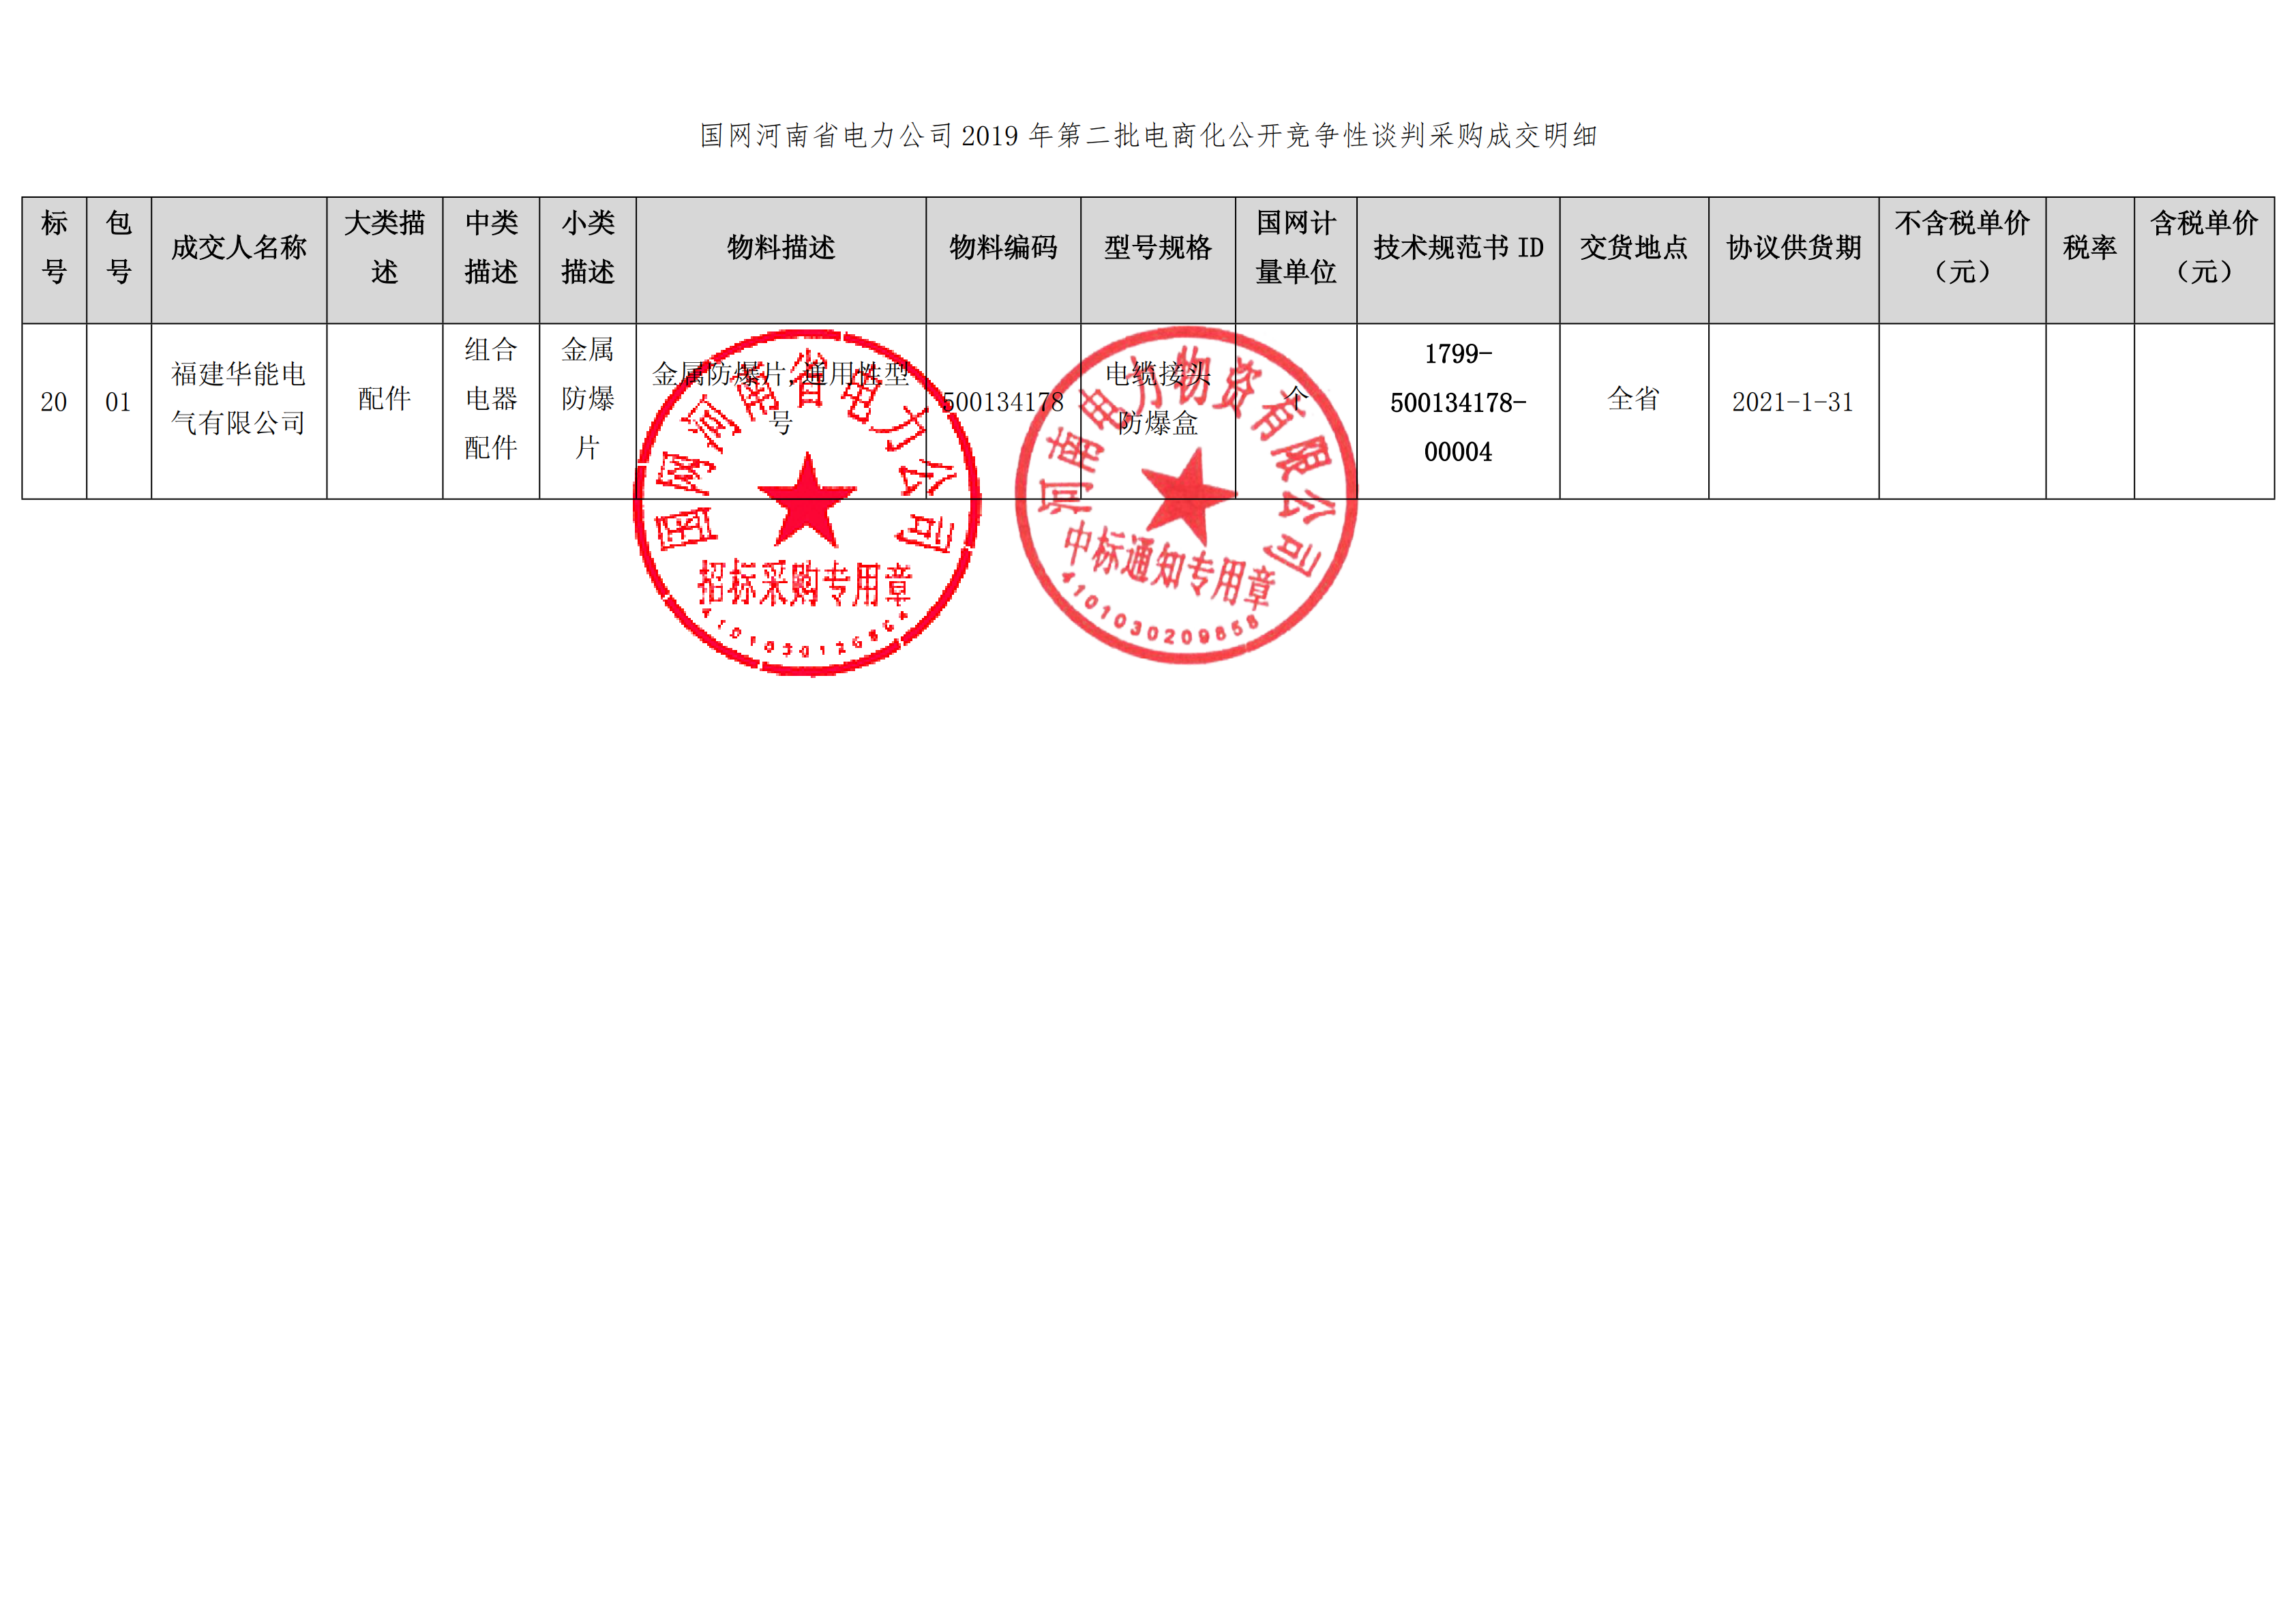 9、国网河南省电力公司2019 年第二批电商化物资招标采购_01 拷贝.png